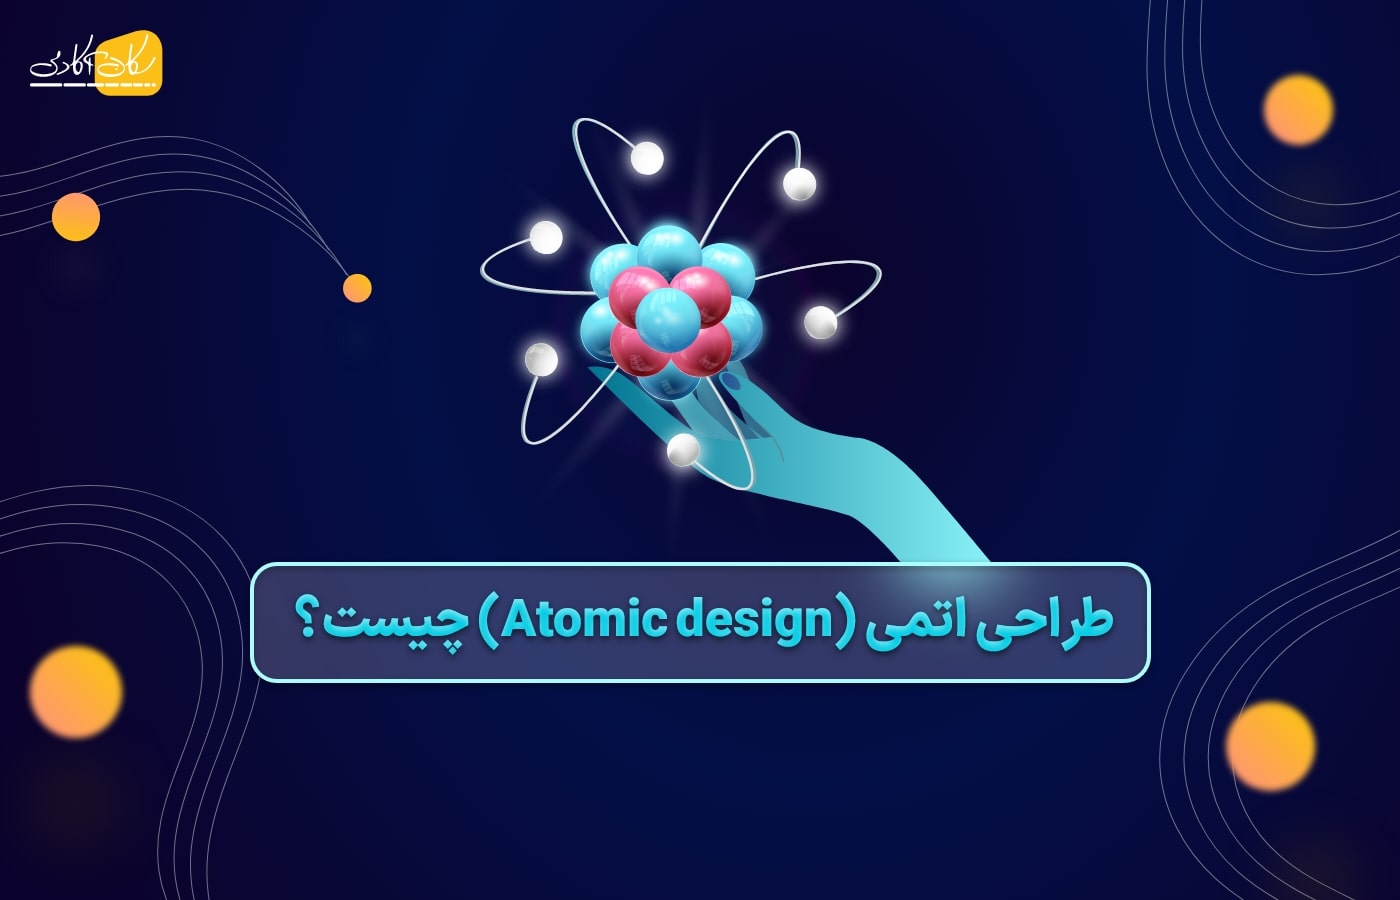 طراحی اتمی یا atomic design چیست؟